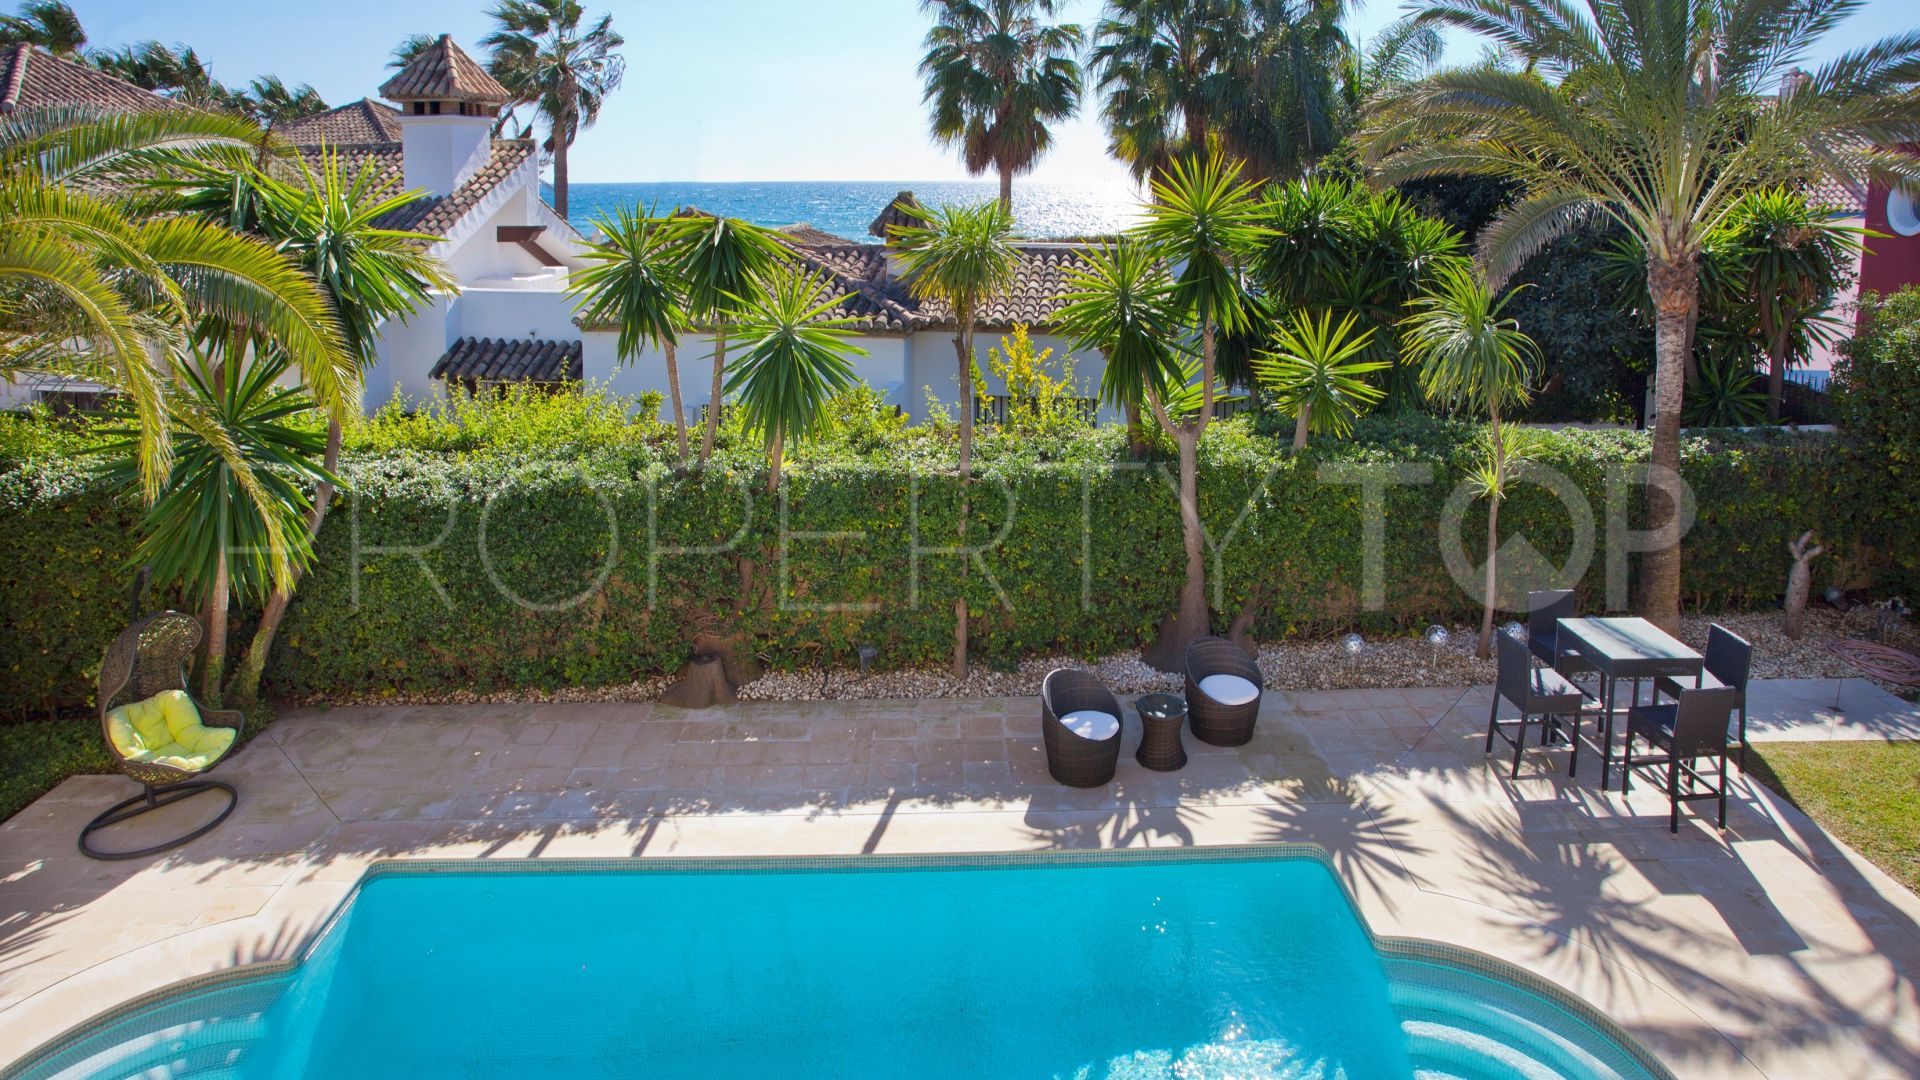 5 bedrooms villa in Bahia de Marbella for sale